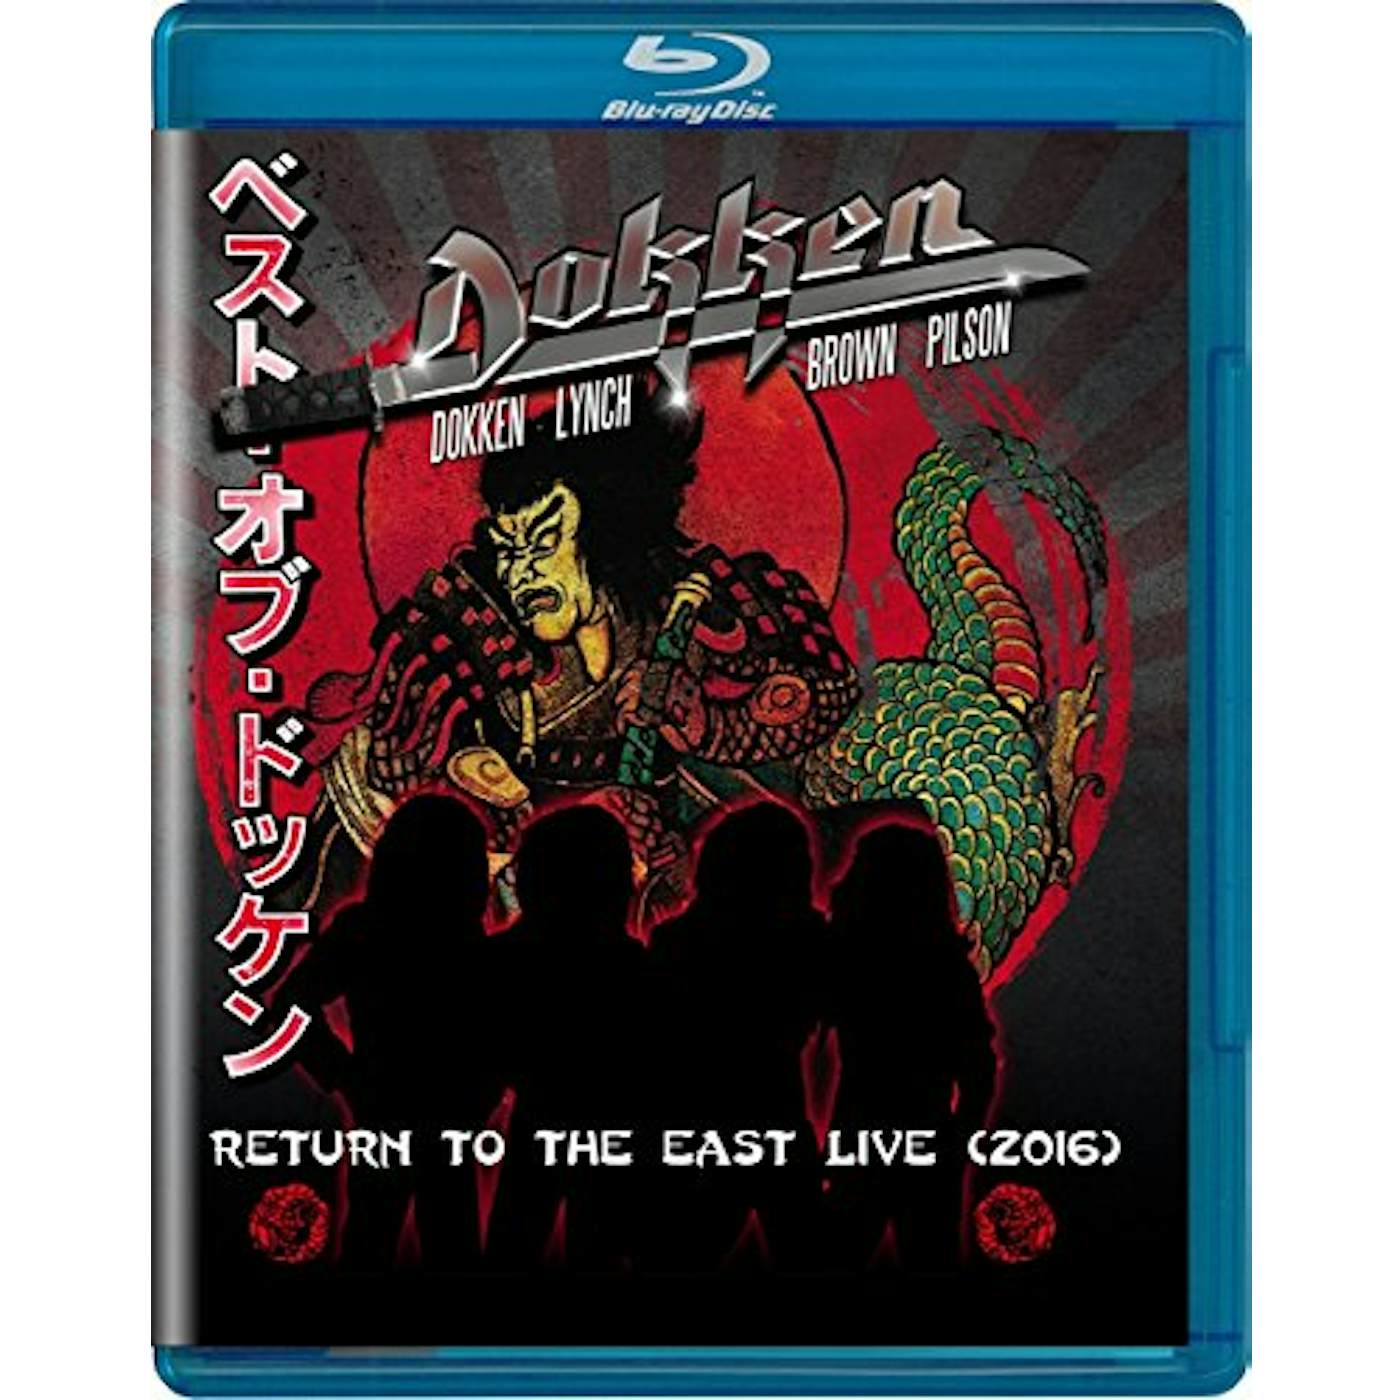 Dokken RETURN TO THE EAST LIVE 2016 Blu-ray